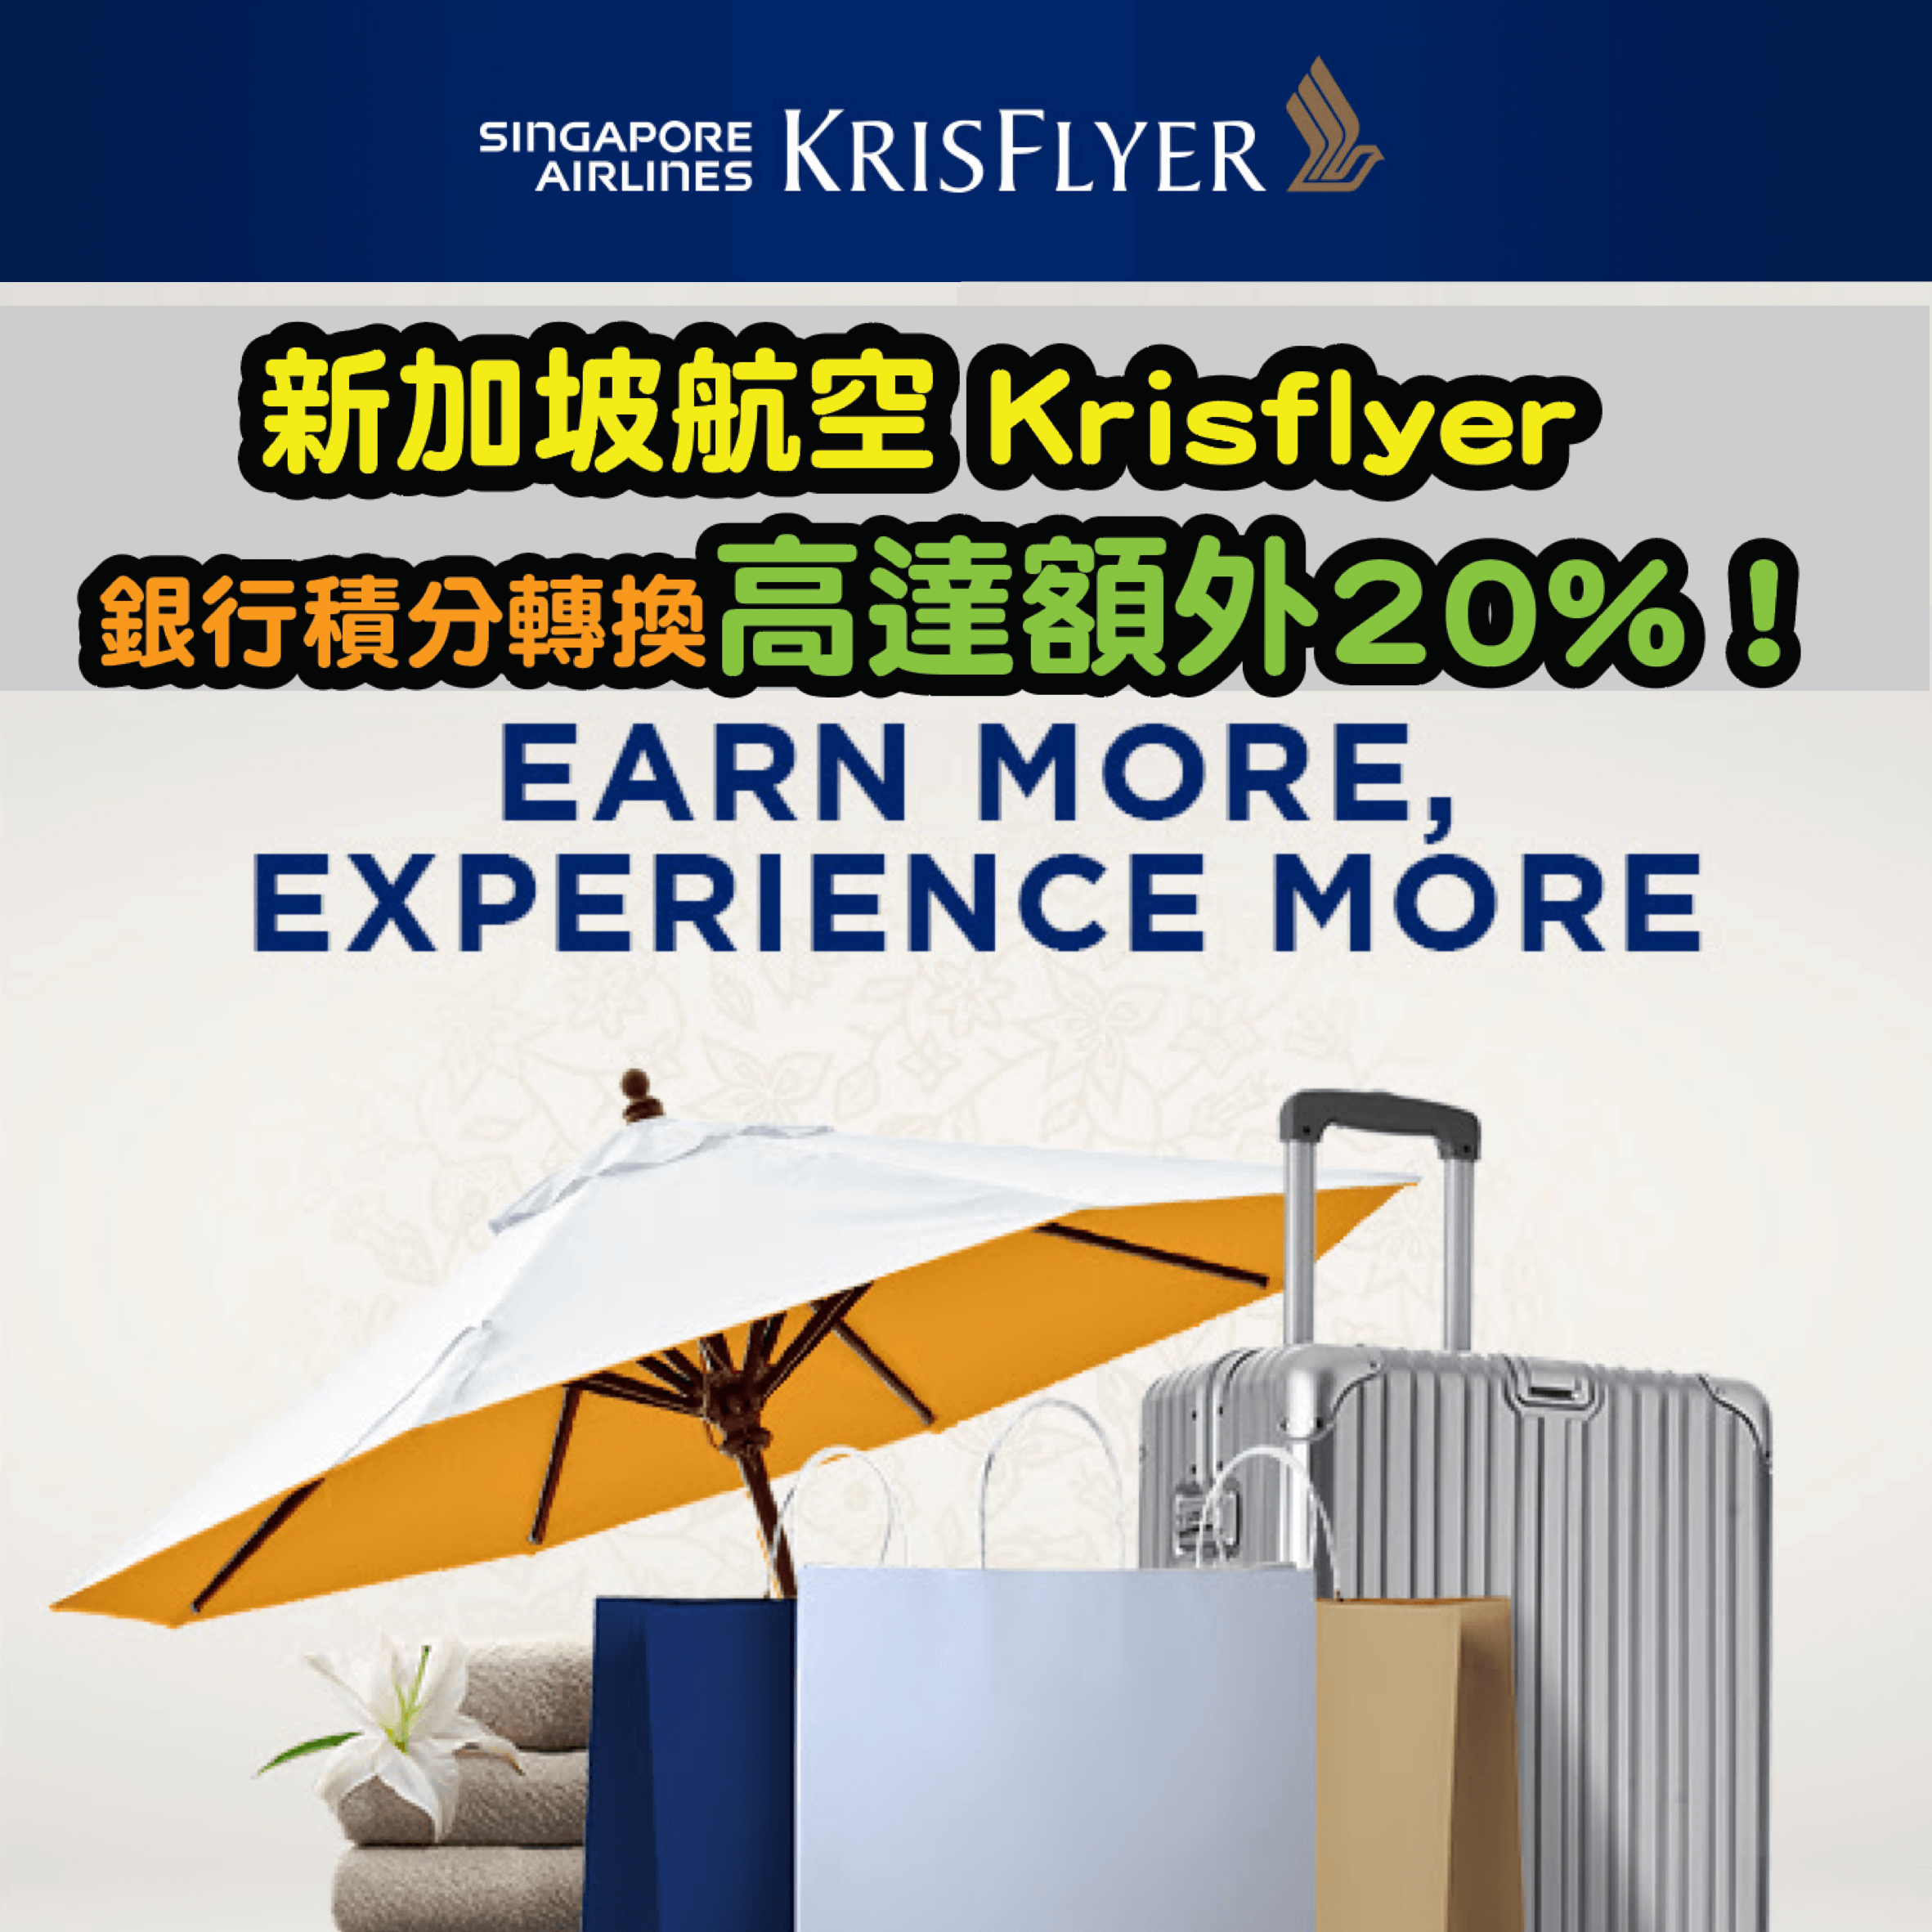 新加坡航空Krisflyer銀行積分轉換，高達20%額外里數！DBS / Citi / AE / HSBC都適用！